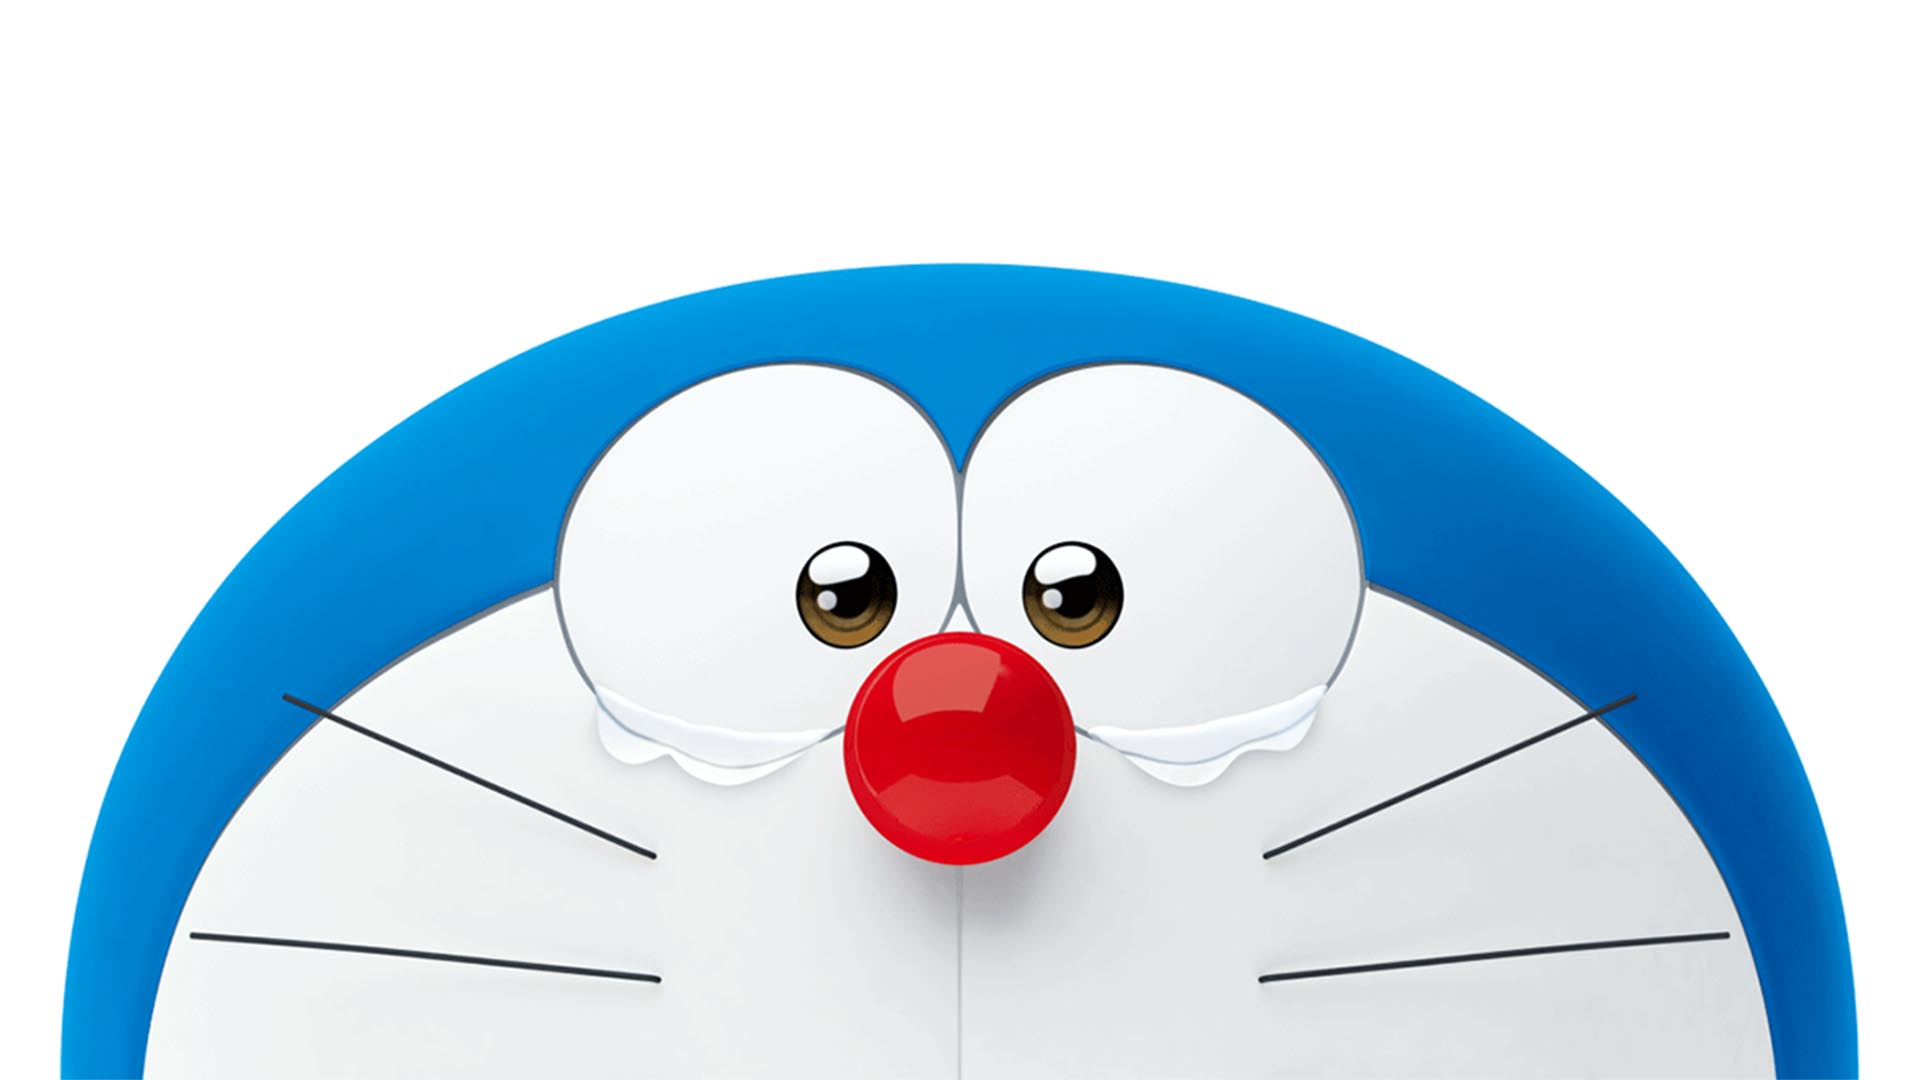 Stand By Me Doraemon: Hãy dành ra chút thời gian để xem bức ảnh đầy ý nghĩa và cảm động này. Bạn sẽ được tái ngộ Doraemon và Nobita sau tất cả những giải trí kinh điển mà truyện tranh này đã mang lại. Cảm xúc đầy xúc động chắc chắn sẽ điểm tô cho bức ảnh này và làm bạn muốn xem lại nhiều lần hơn nữa!